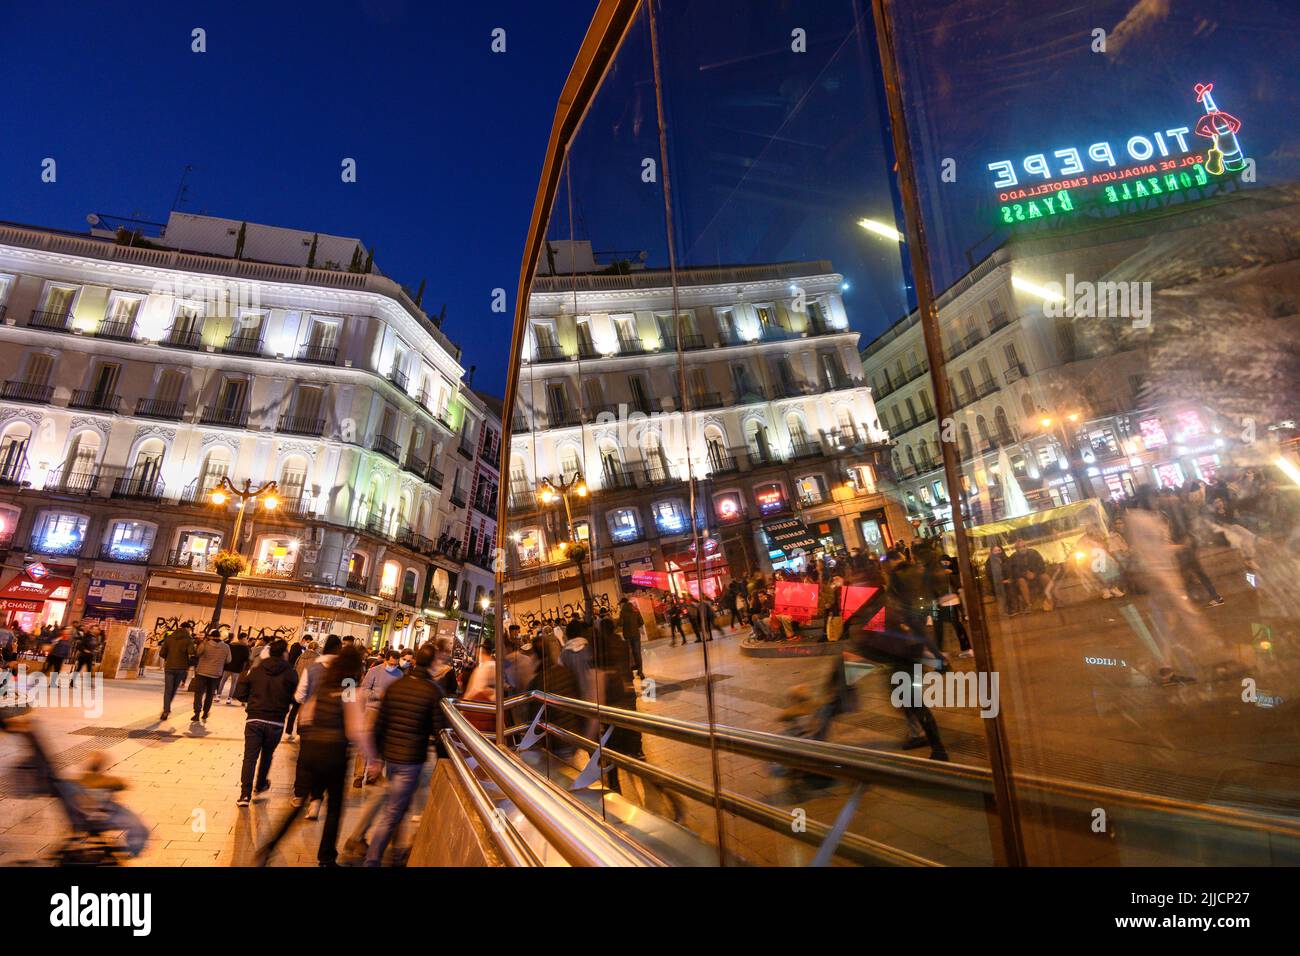 Multitudes en la Puerta del Sol, por la noche con el famoso cartel publicitario Tio Pepe reflejado en las ventanas de la estación de metro Sol. Madrid, España. Foto de stock